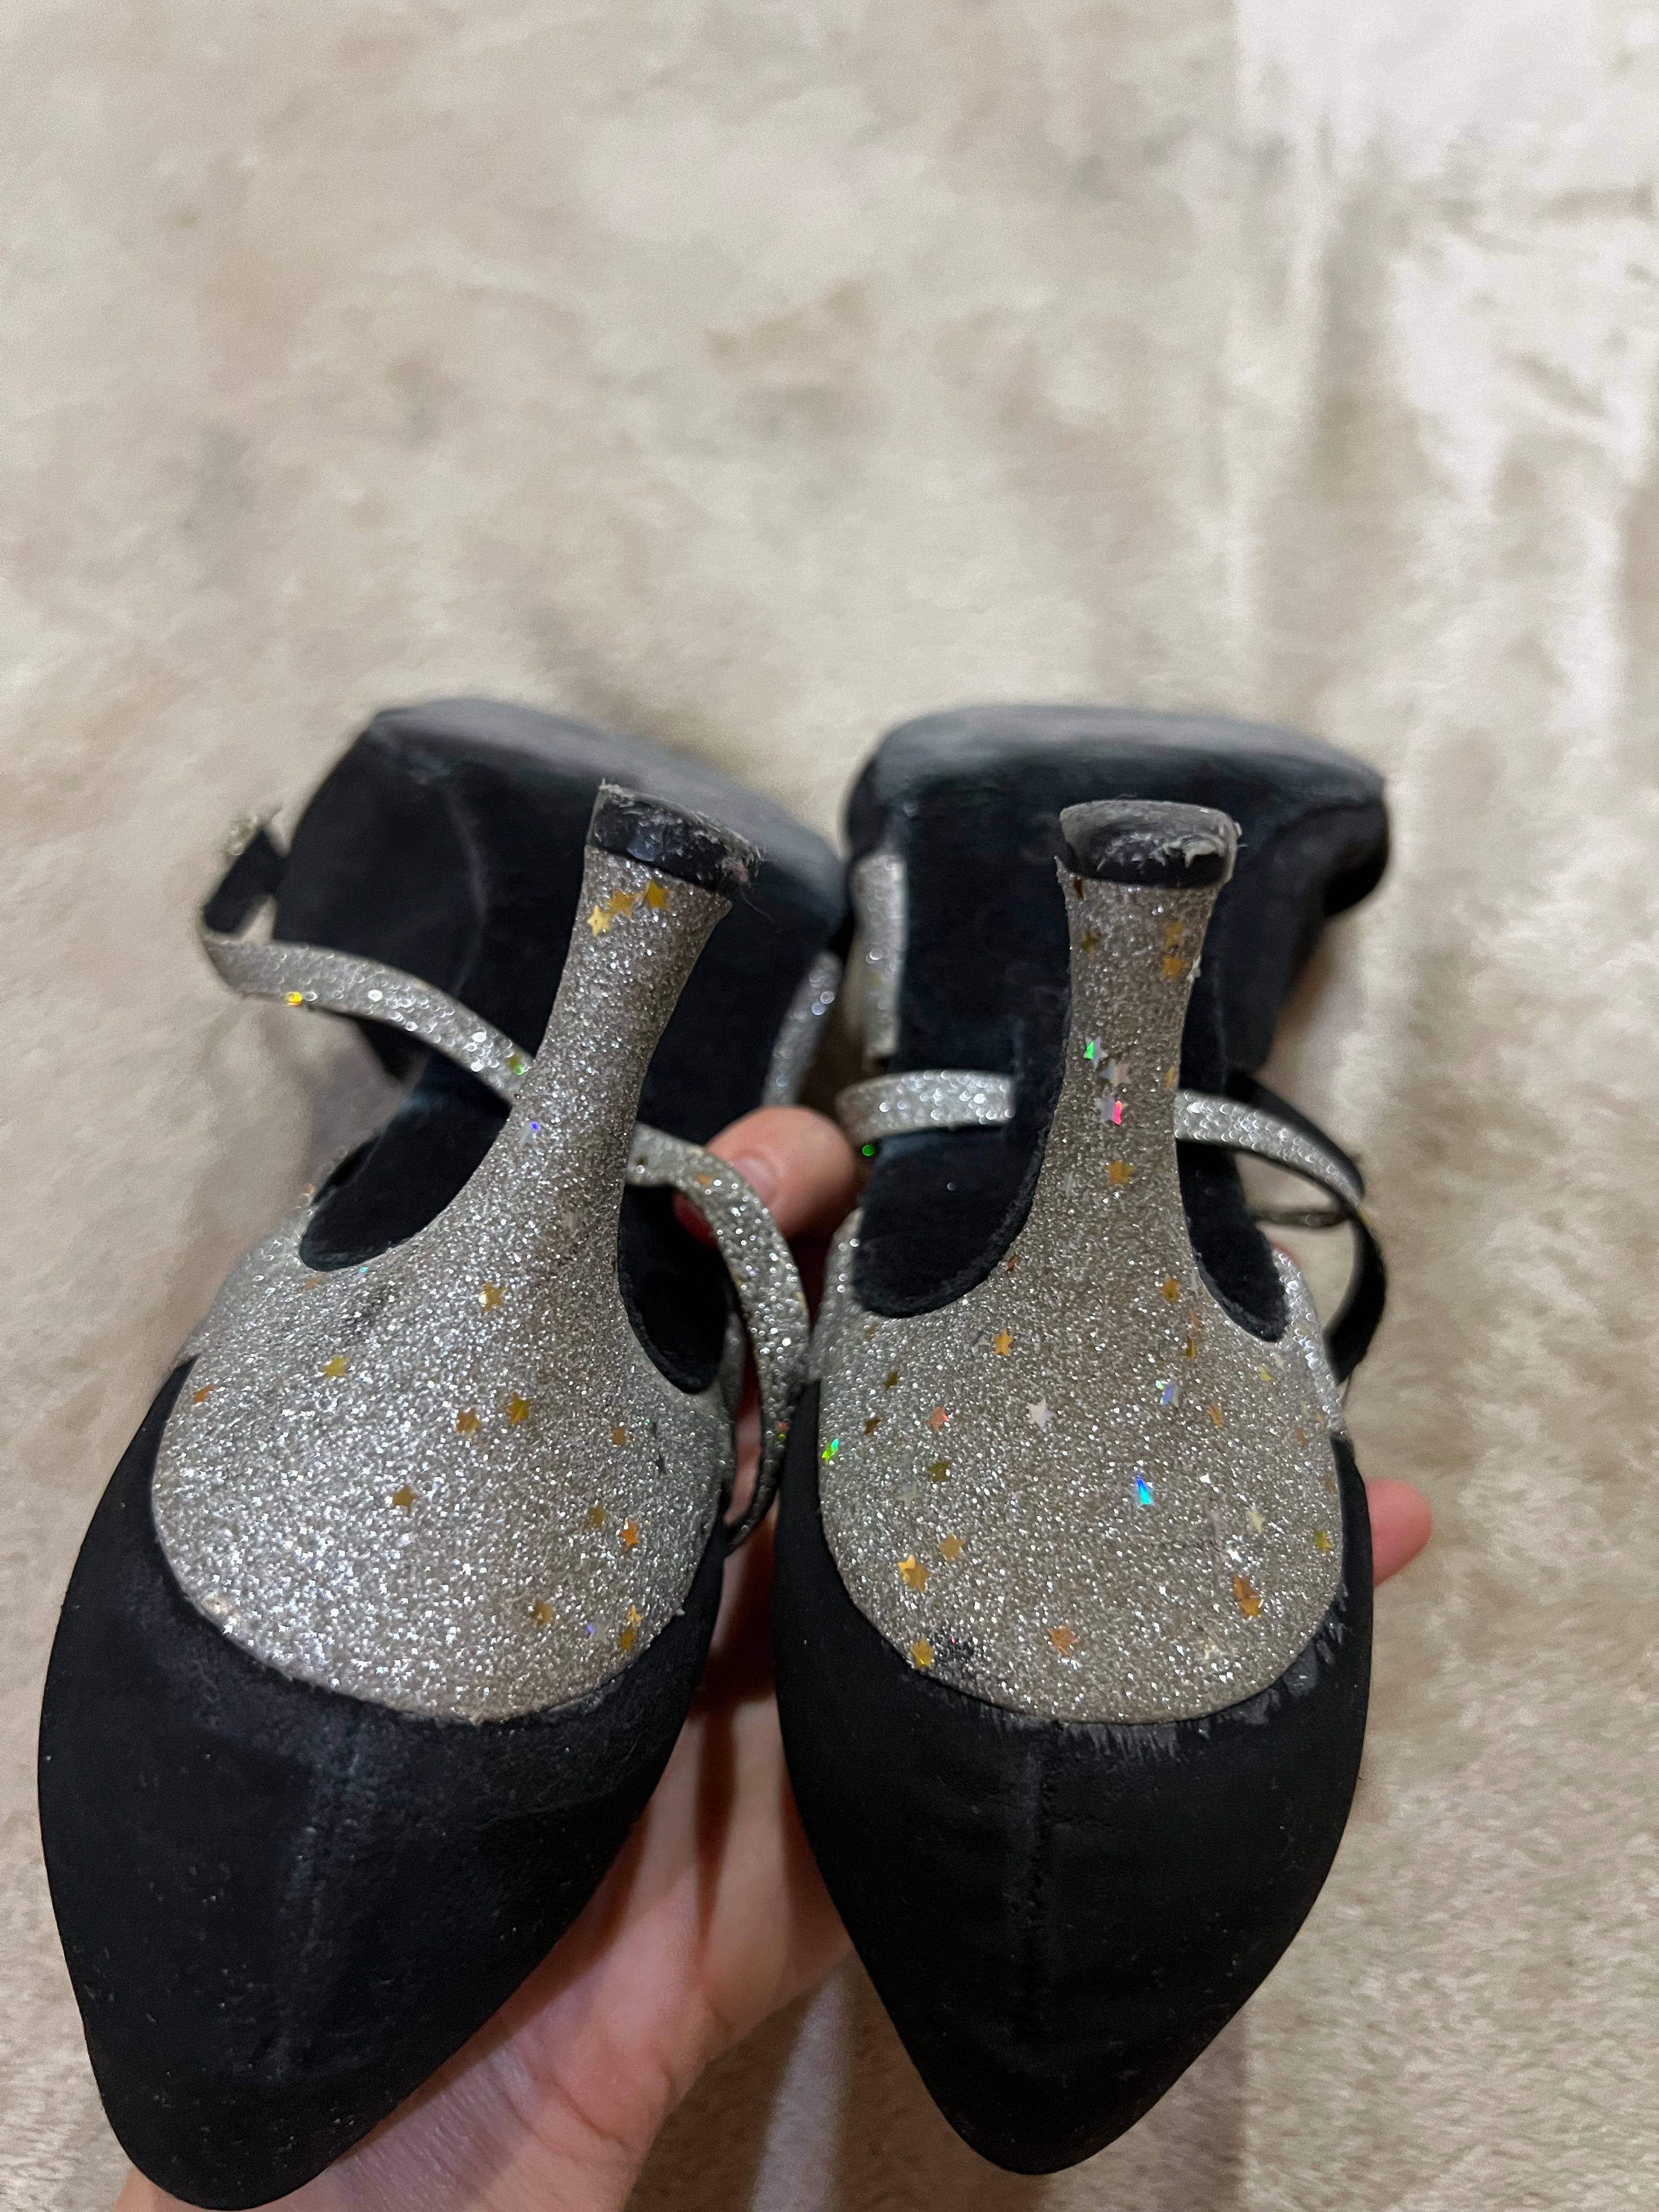 Танцевальные туфли